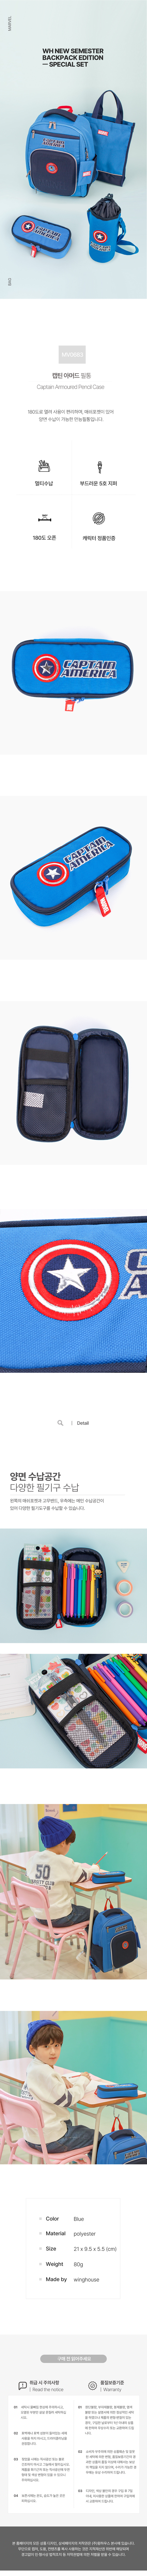 韓國MARVEL英雄系列鉛筆袋/拉鍊袋-美國隊長Captain America